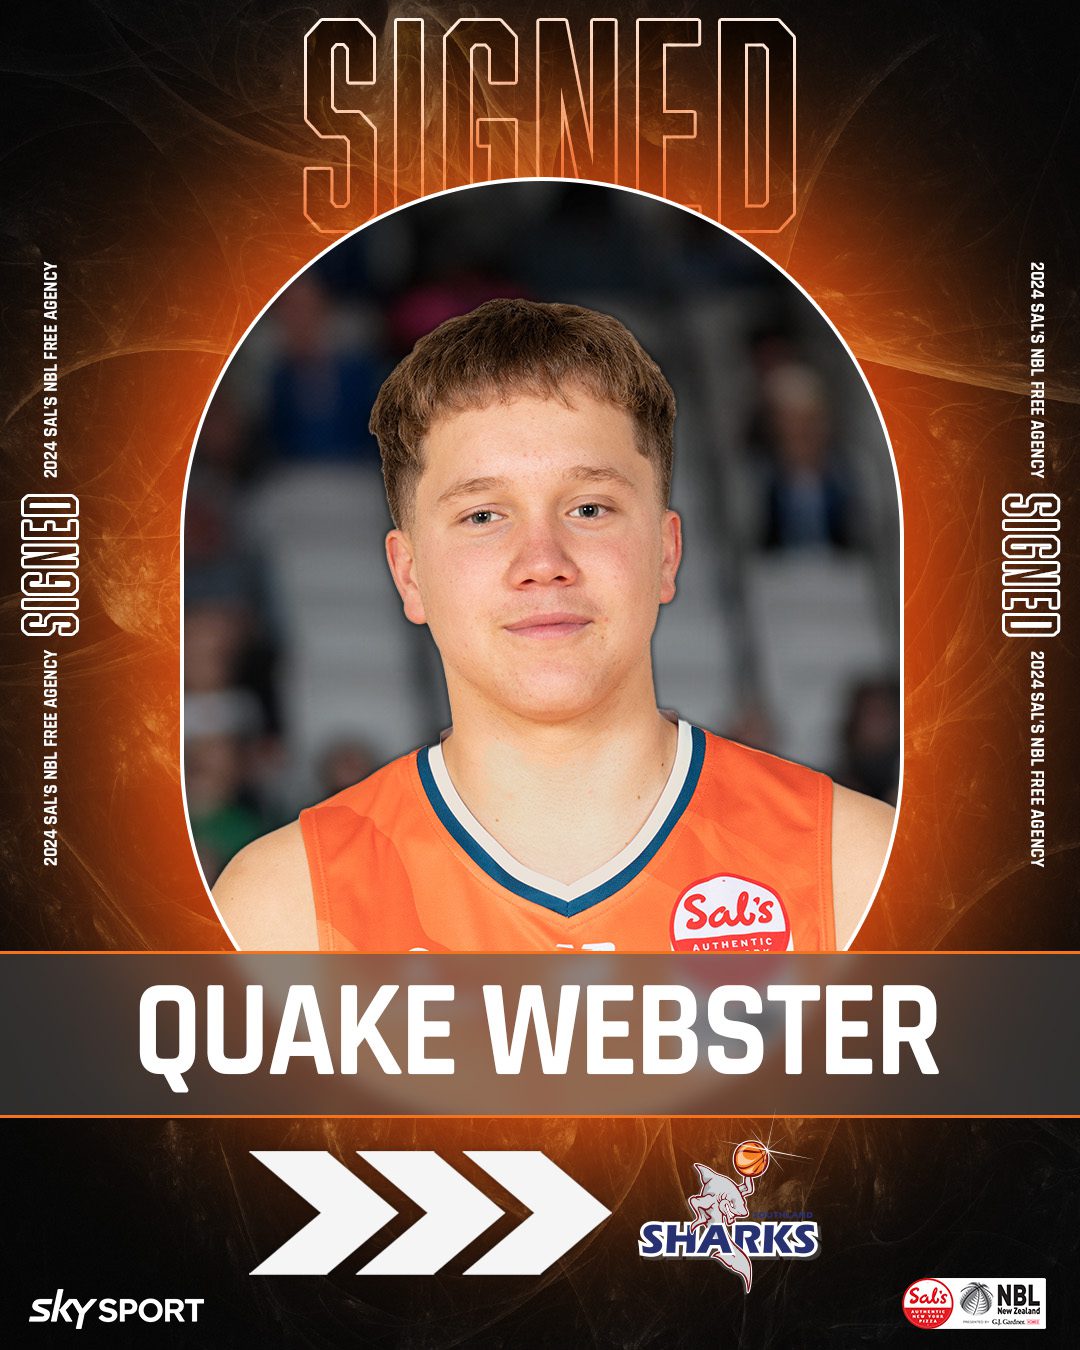 Quake Webster